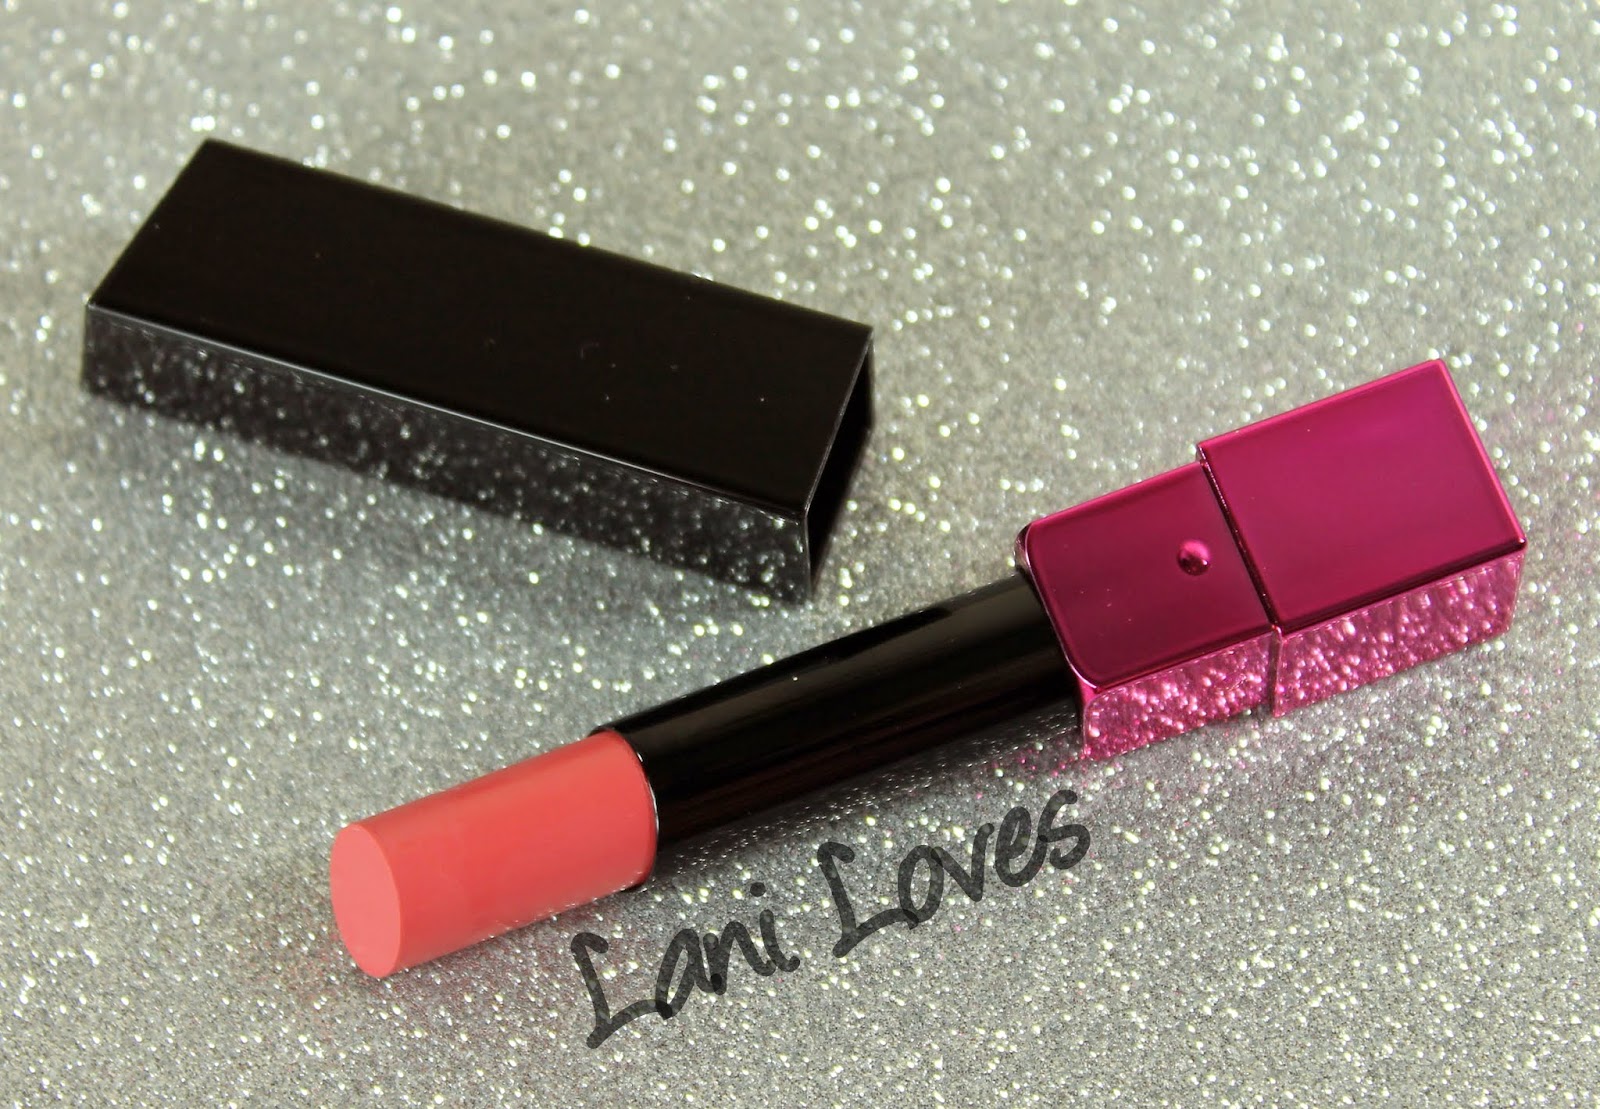 ZA Vibrant Moist Lipstick - PK381s swatches & review